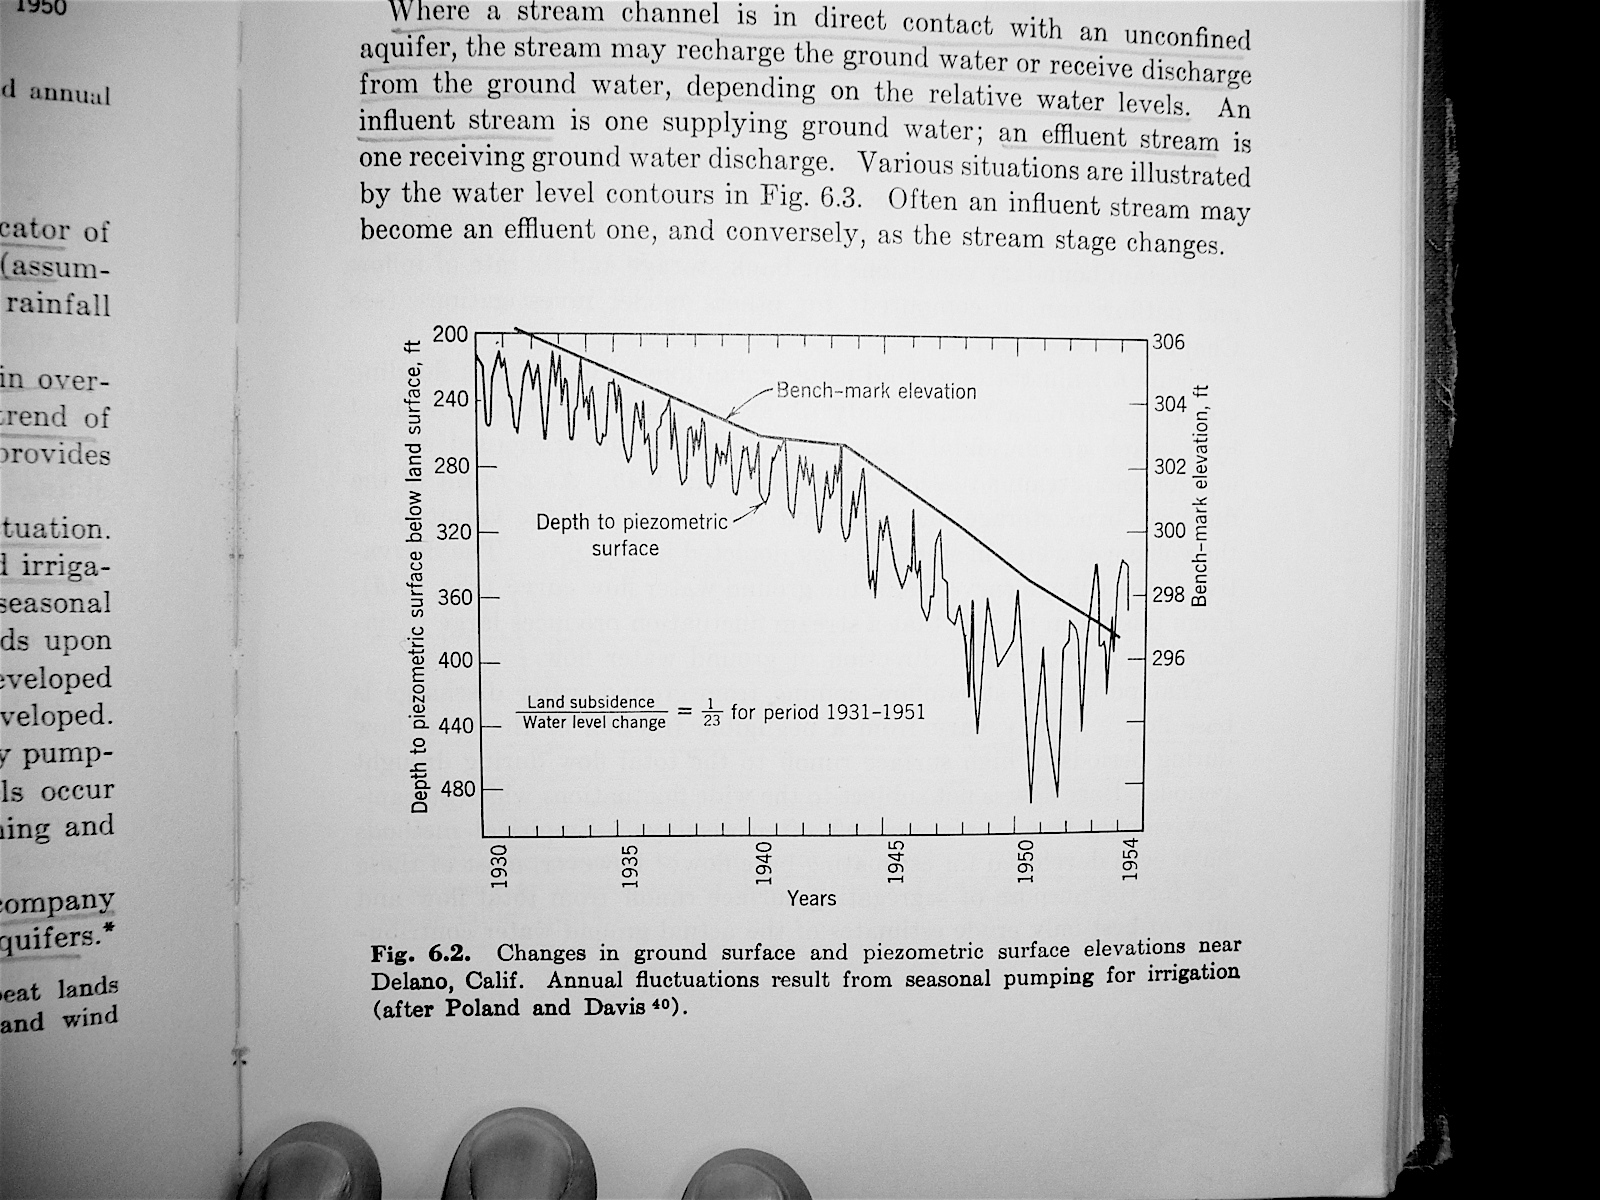 10/13/08 Variaciones estacionales y seculares Patrones estacionales ciclos de recarga y descarga producto de patrones de explotación estacionales (riego) Flujo